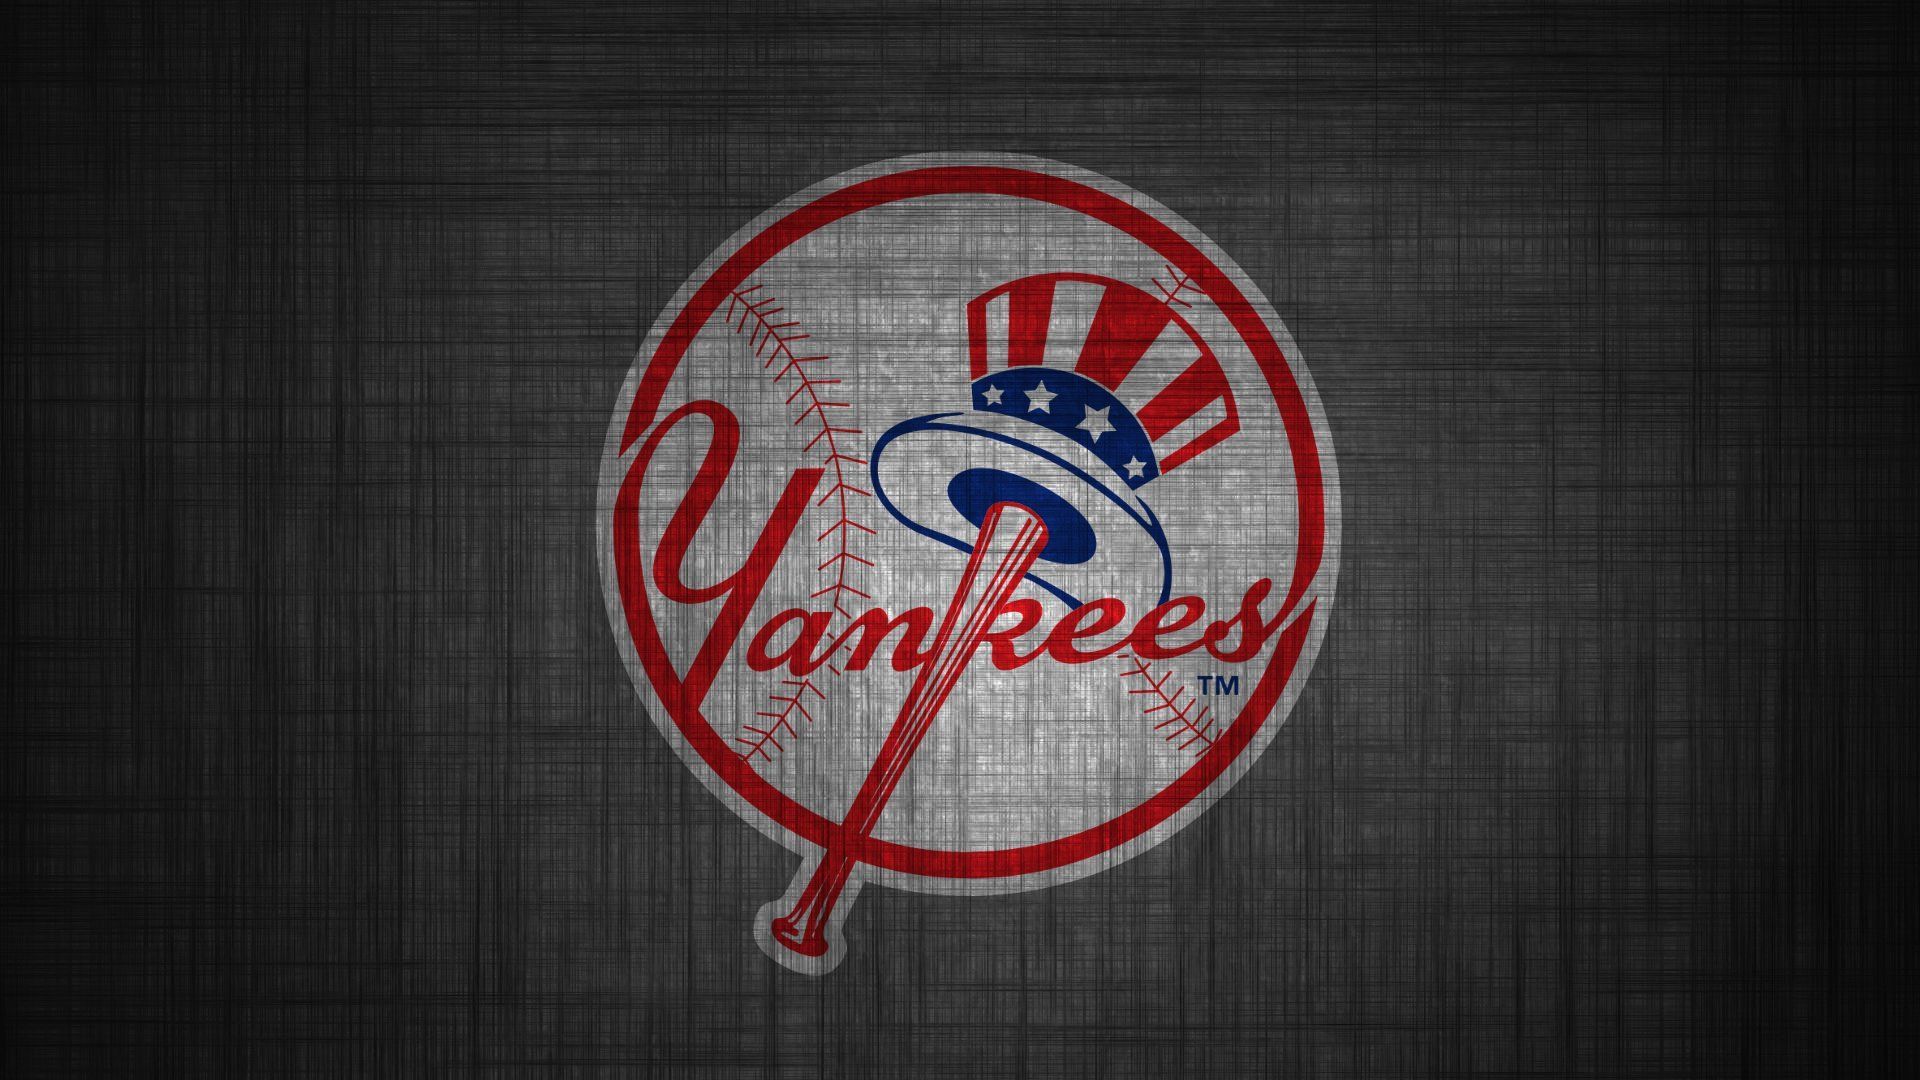 New York Yankees Wallpaper HD Wallpaper HD. Yankees wallpaper, New york yankees wallpaper, New york yankees logo